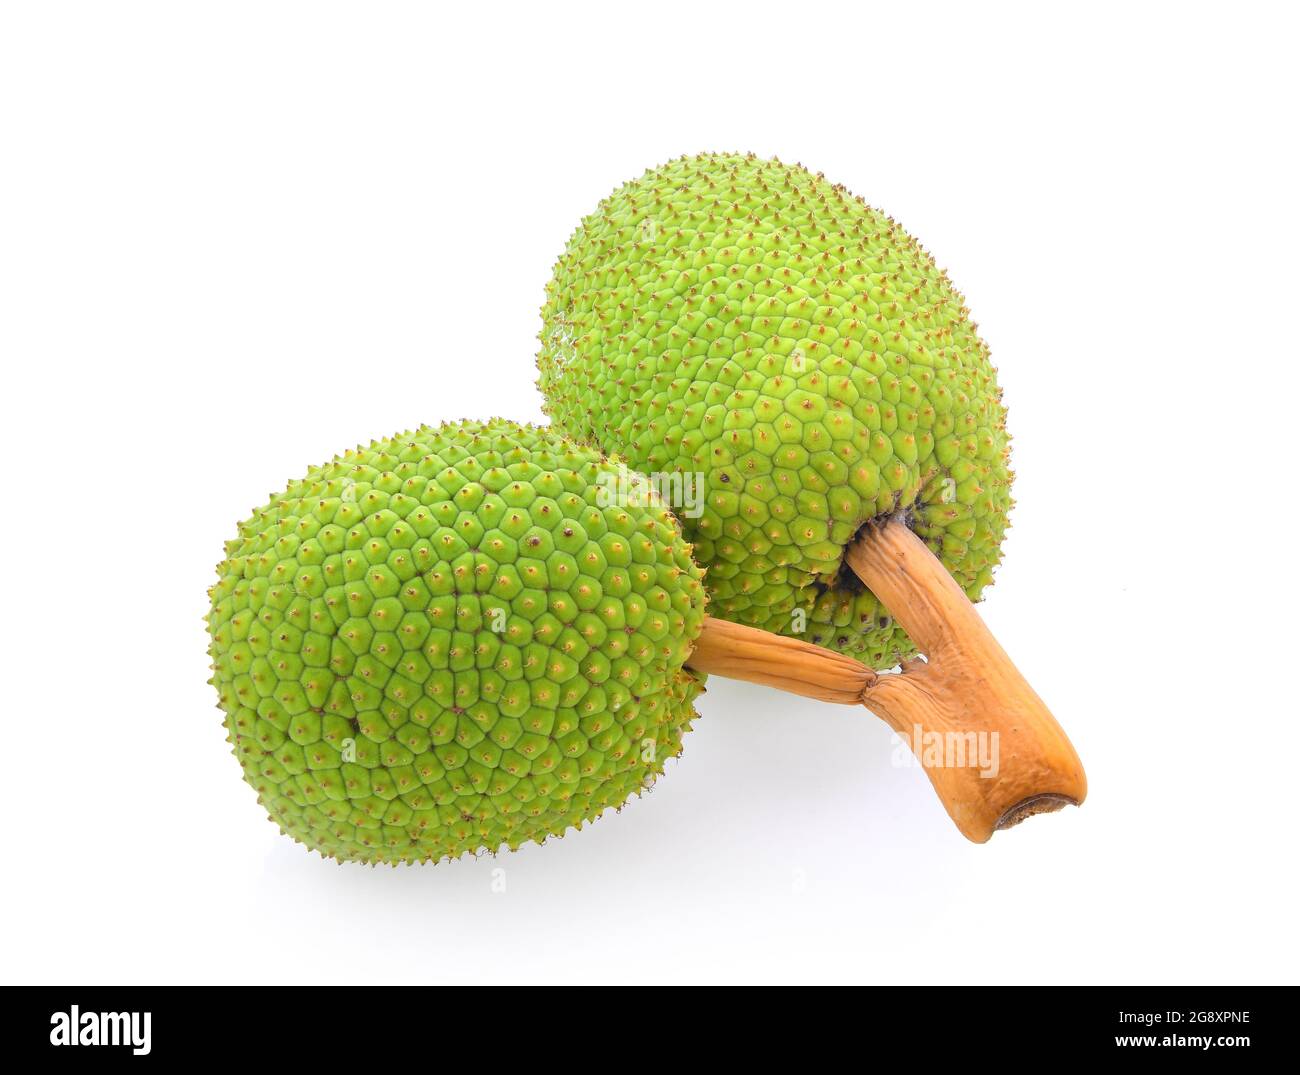 breadfruit isolated on white background Stock Photo